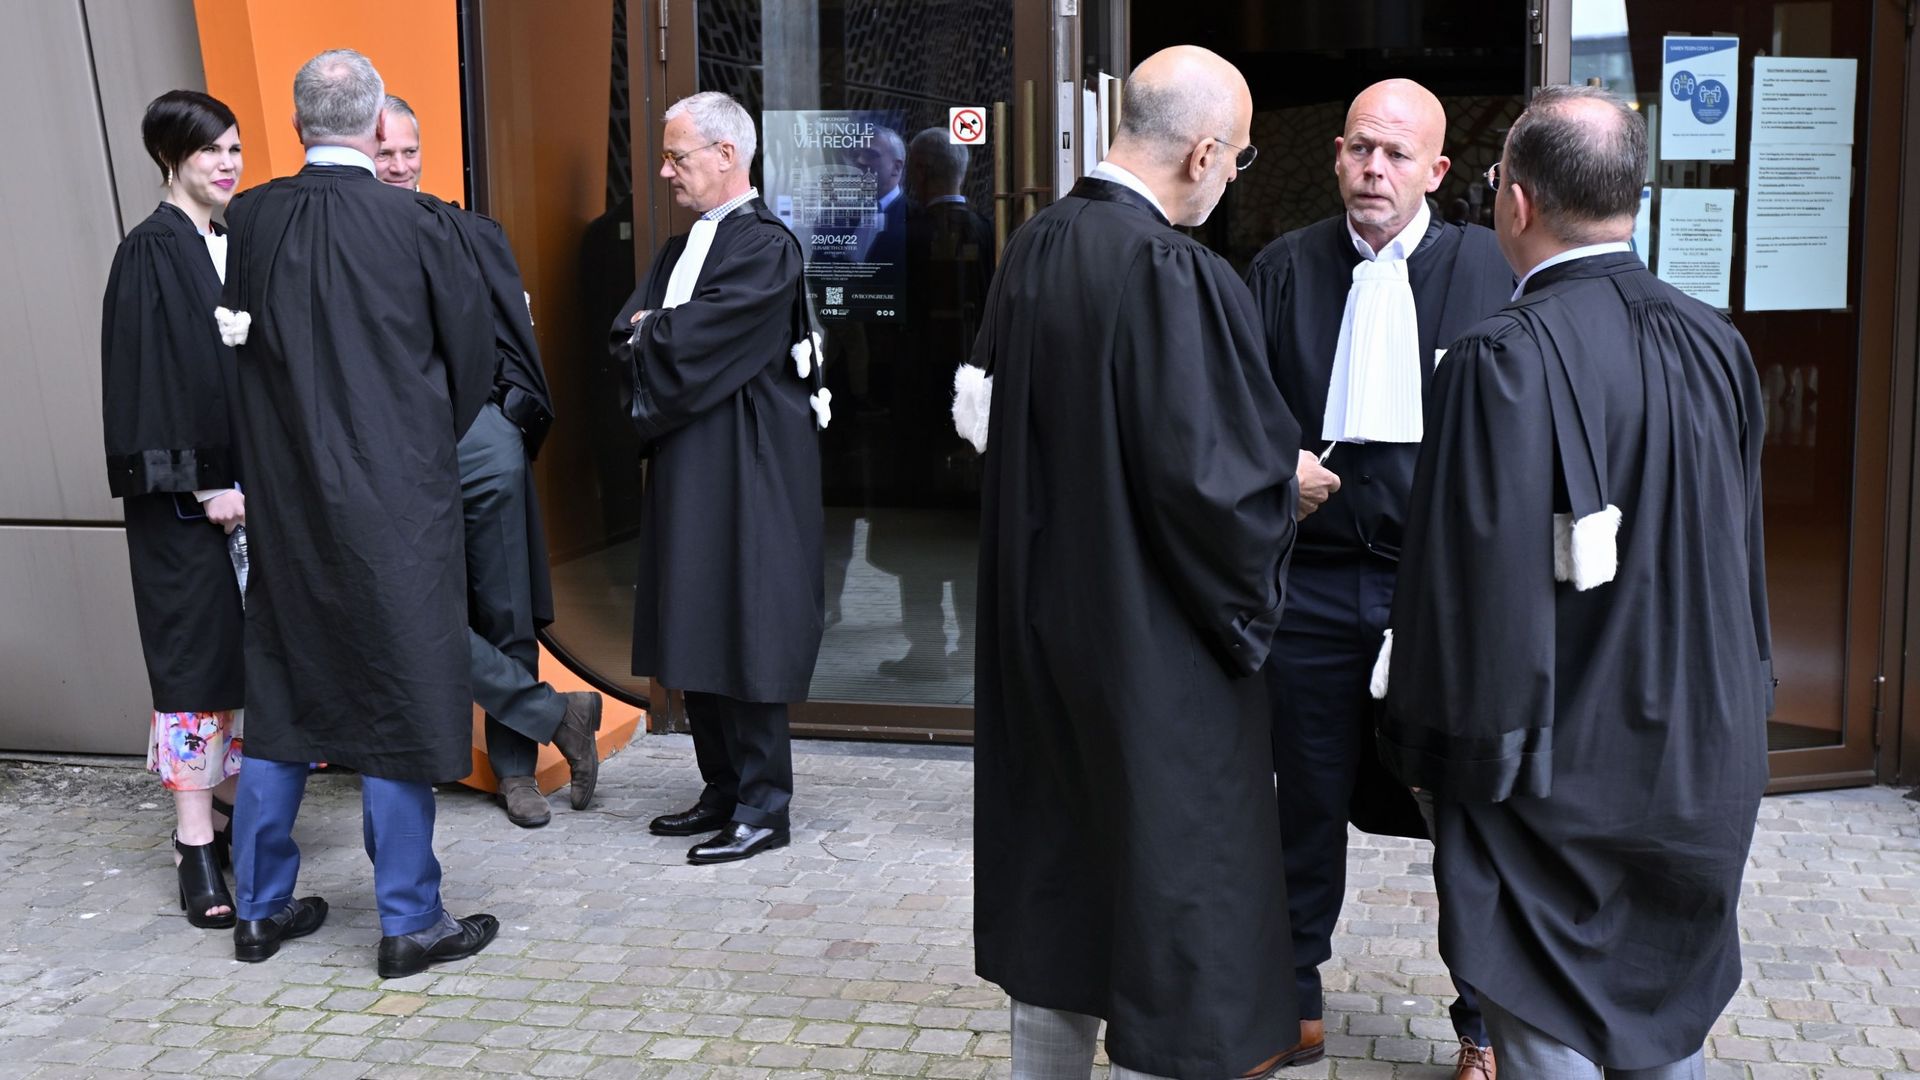 L'avocat John Maes, l'avocat Sven Mary et l'avocat Eric Boon photographiés au début du procès contre les 18 membres du club d'étudiants de Reuzegom qui sont associés à la mort de Sanda Dia, devant le tribunal pénal, au palais de justice de Hasselt, vendre